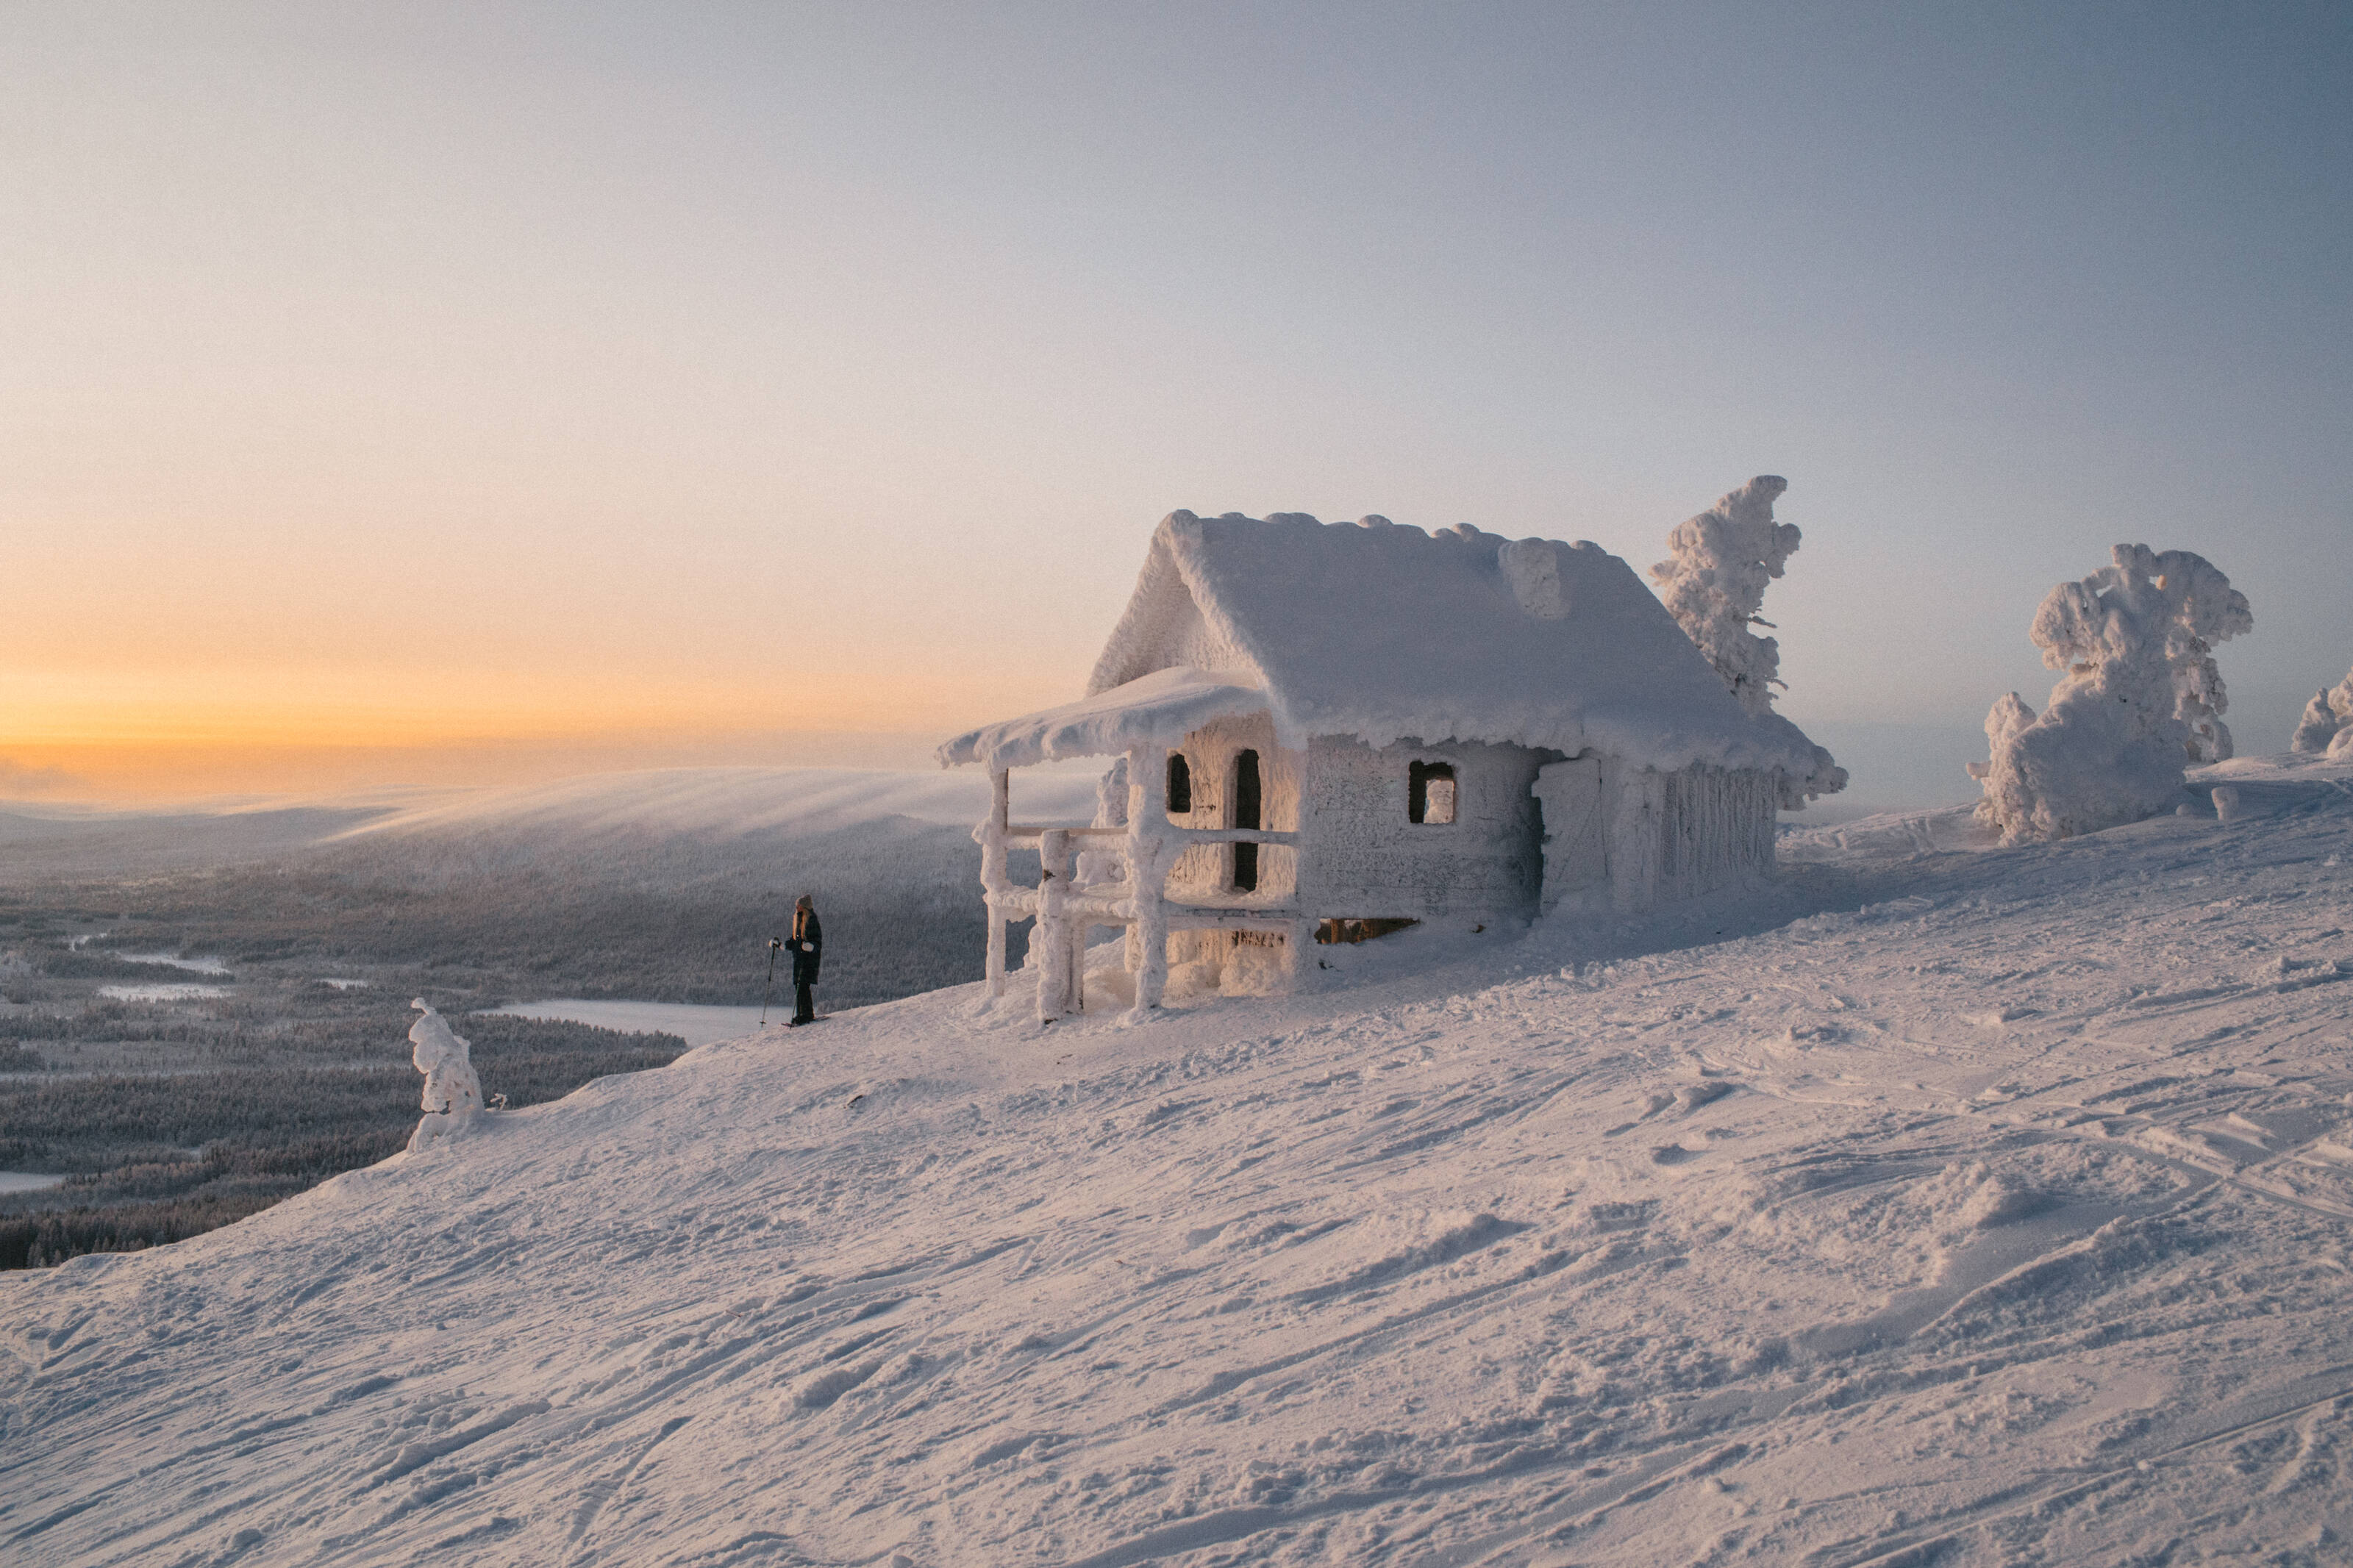 Una raqueta de nieve junto a una cabaña totalmente cubierta de hielo y nieve en la cima de una colina.